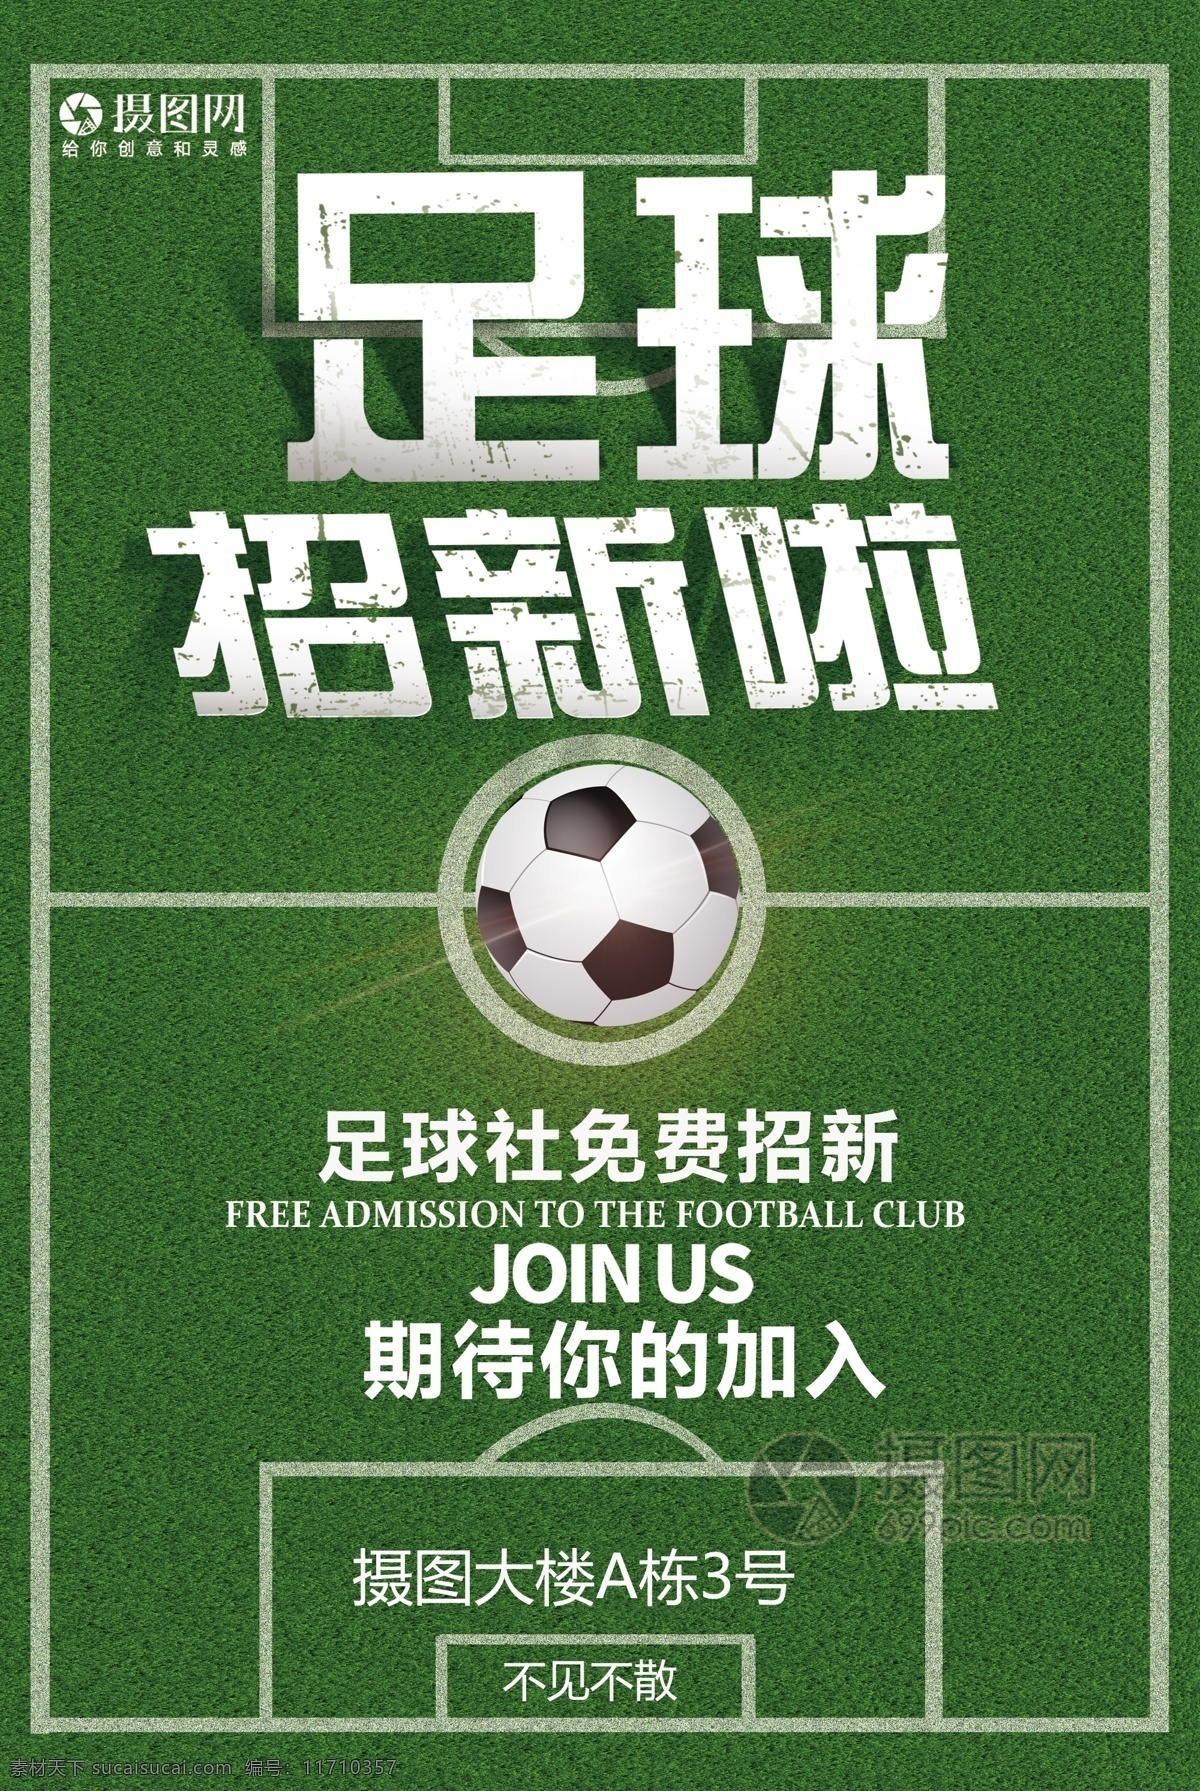 足球 社团 招 新 海报 社团招新 足球场 足球招生 绿色 足球招新海报 运动 踢球 体育